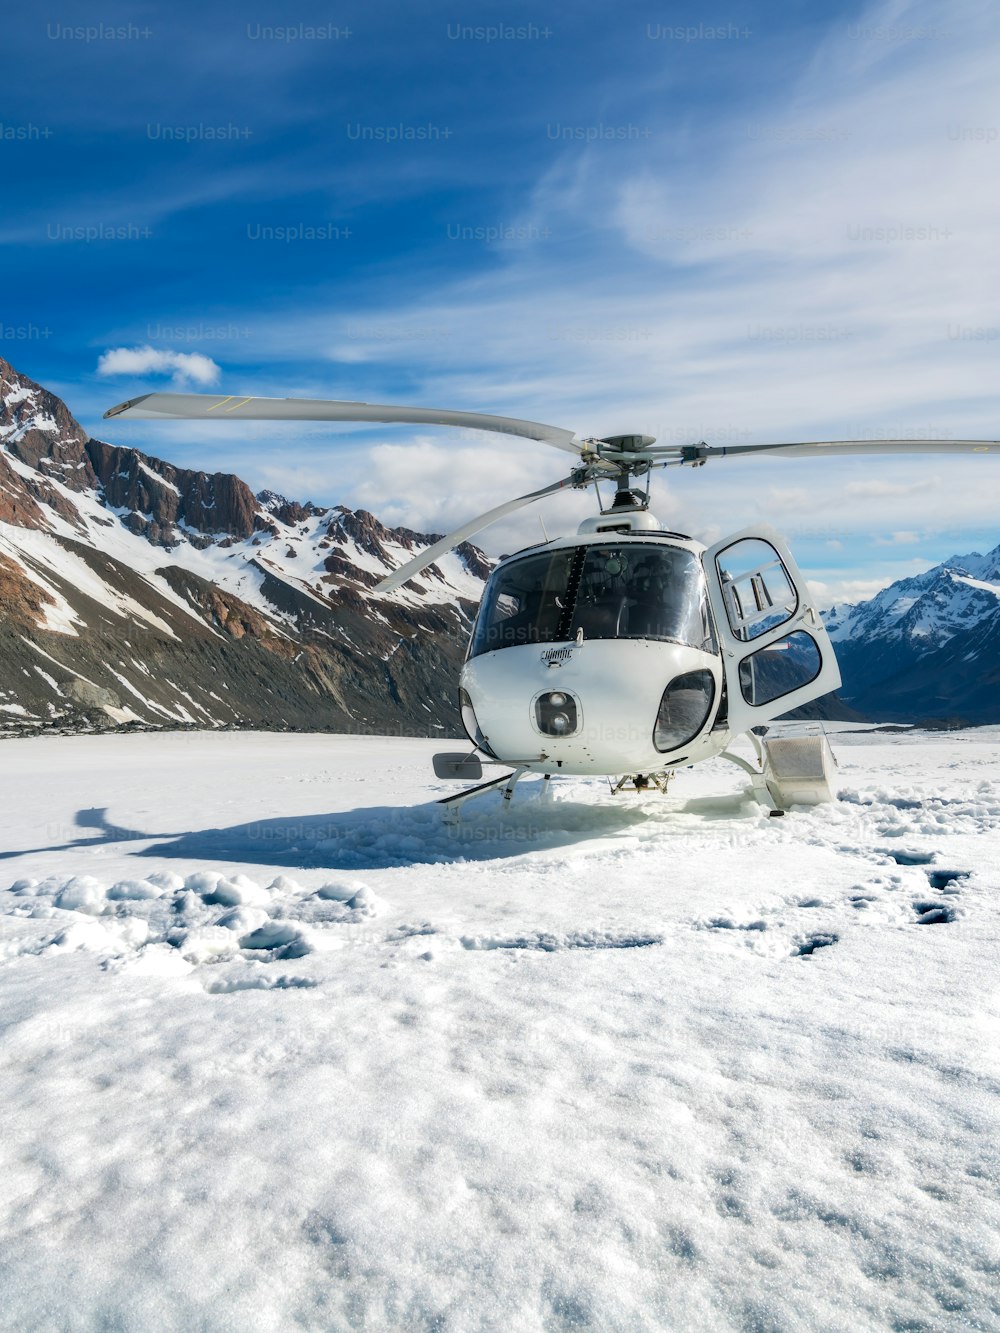 Atterraggio in elicottero sulla montagna di neve nel ghiacciaio tasman a Mt Cook, Nuova Zelanda. Il servizio di elicotteri a Mt Cook offre voli panoramici, atterraggio sul ghiacciaio e soccorso di emergenza.